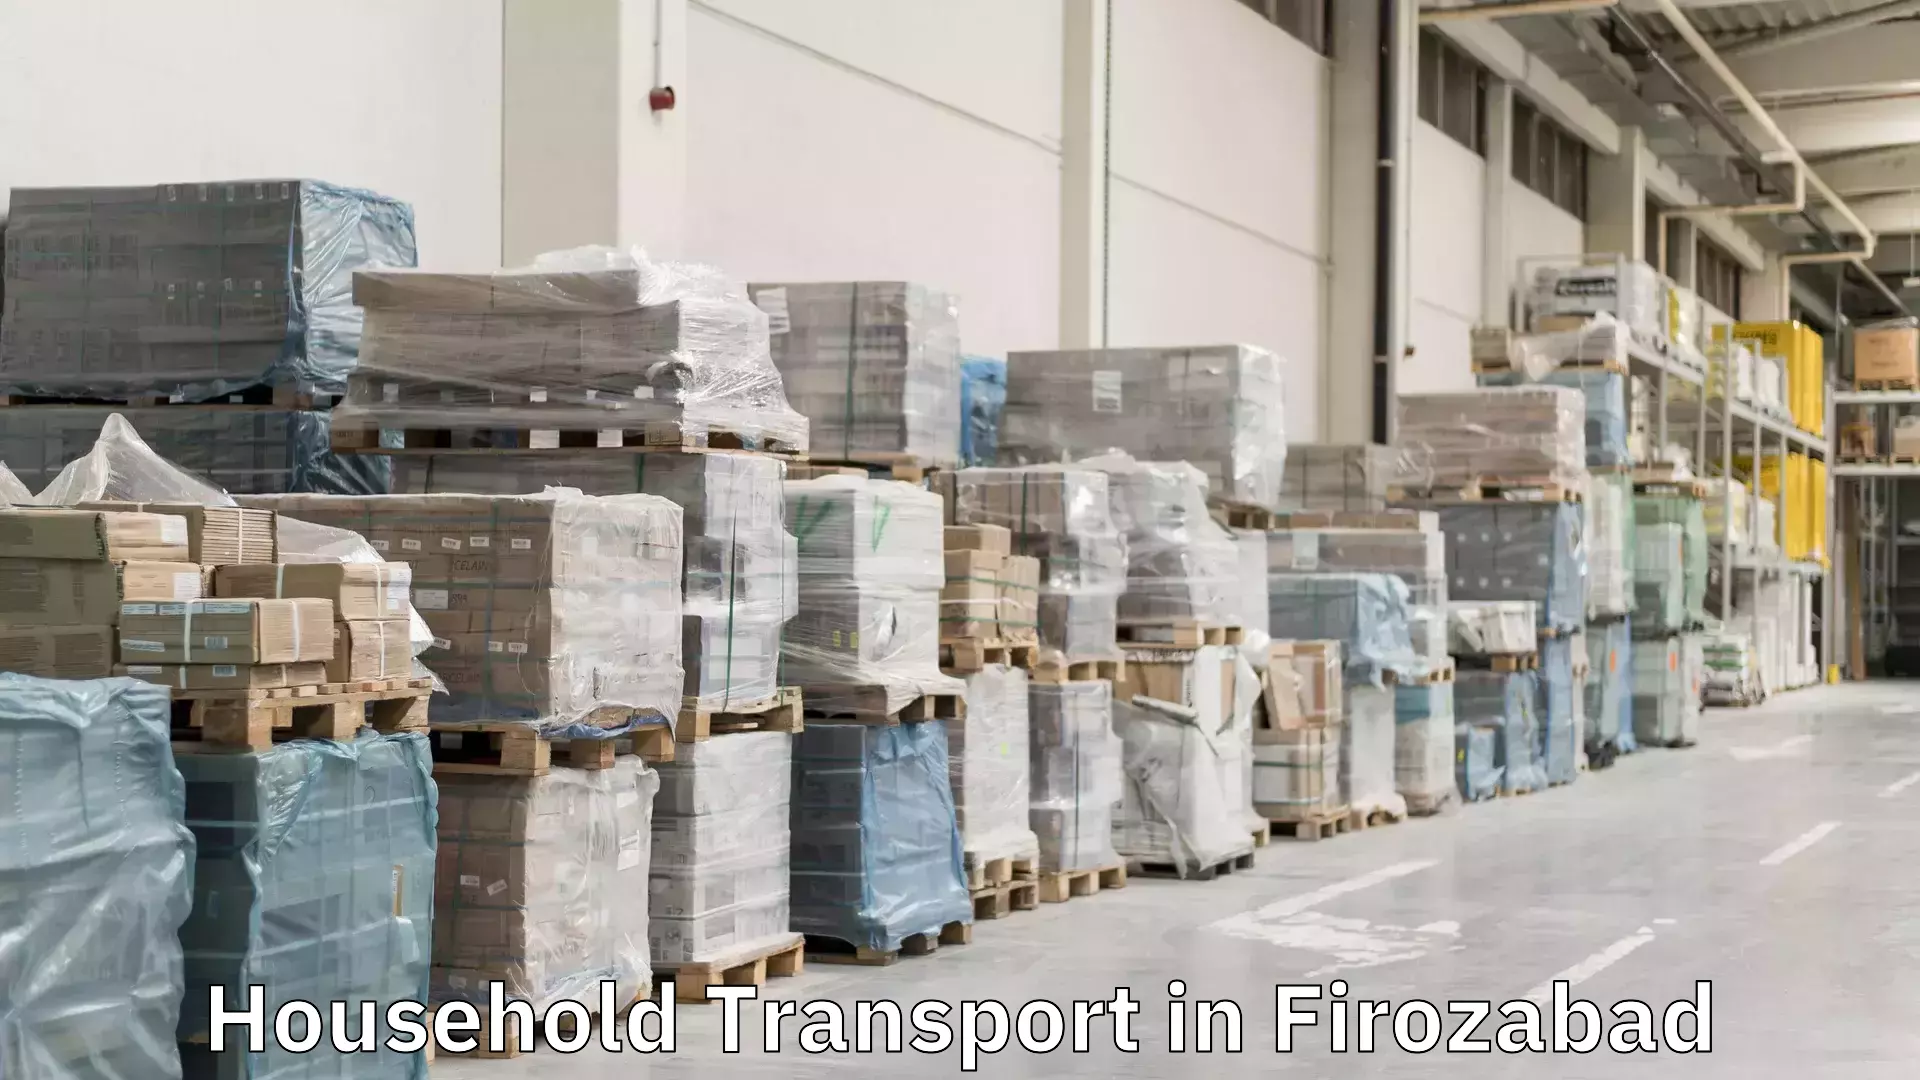 Furniture transport service in Firozabad